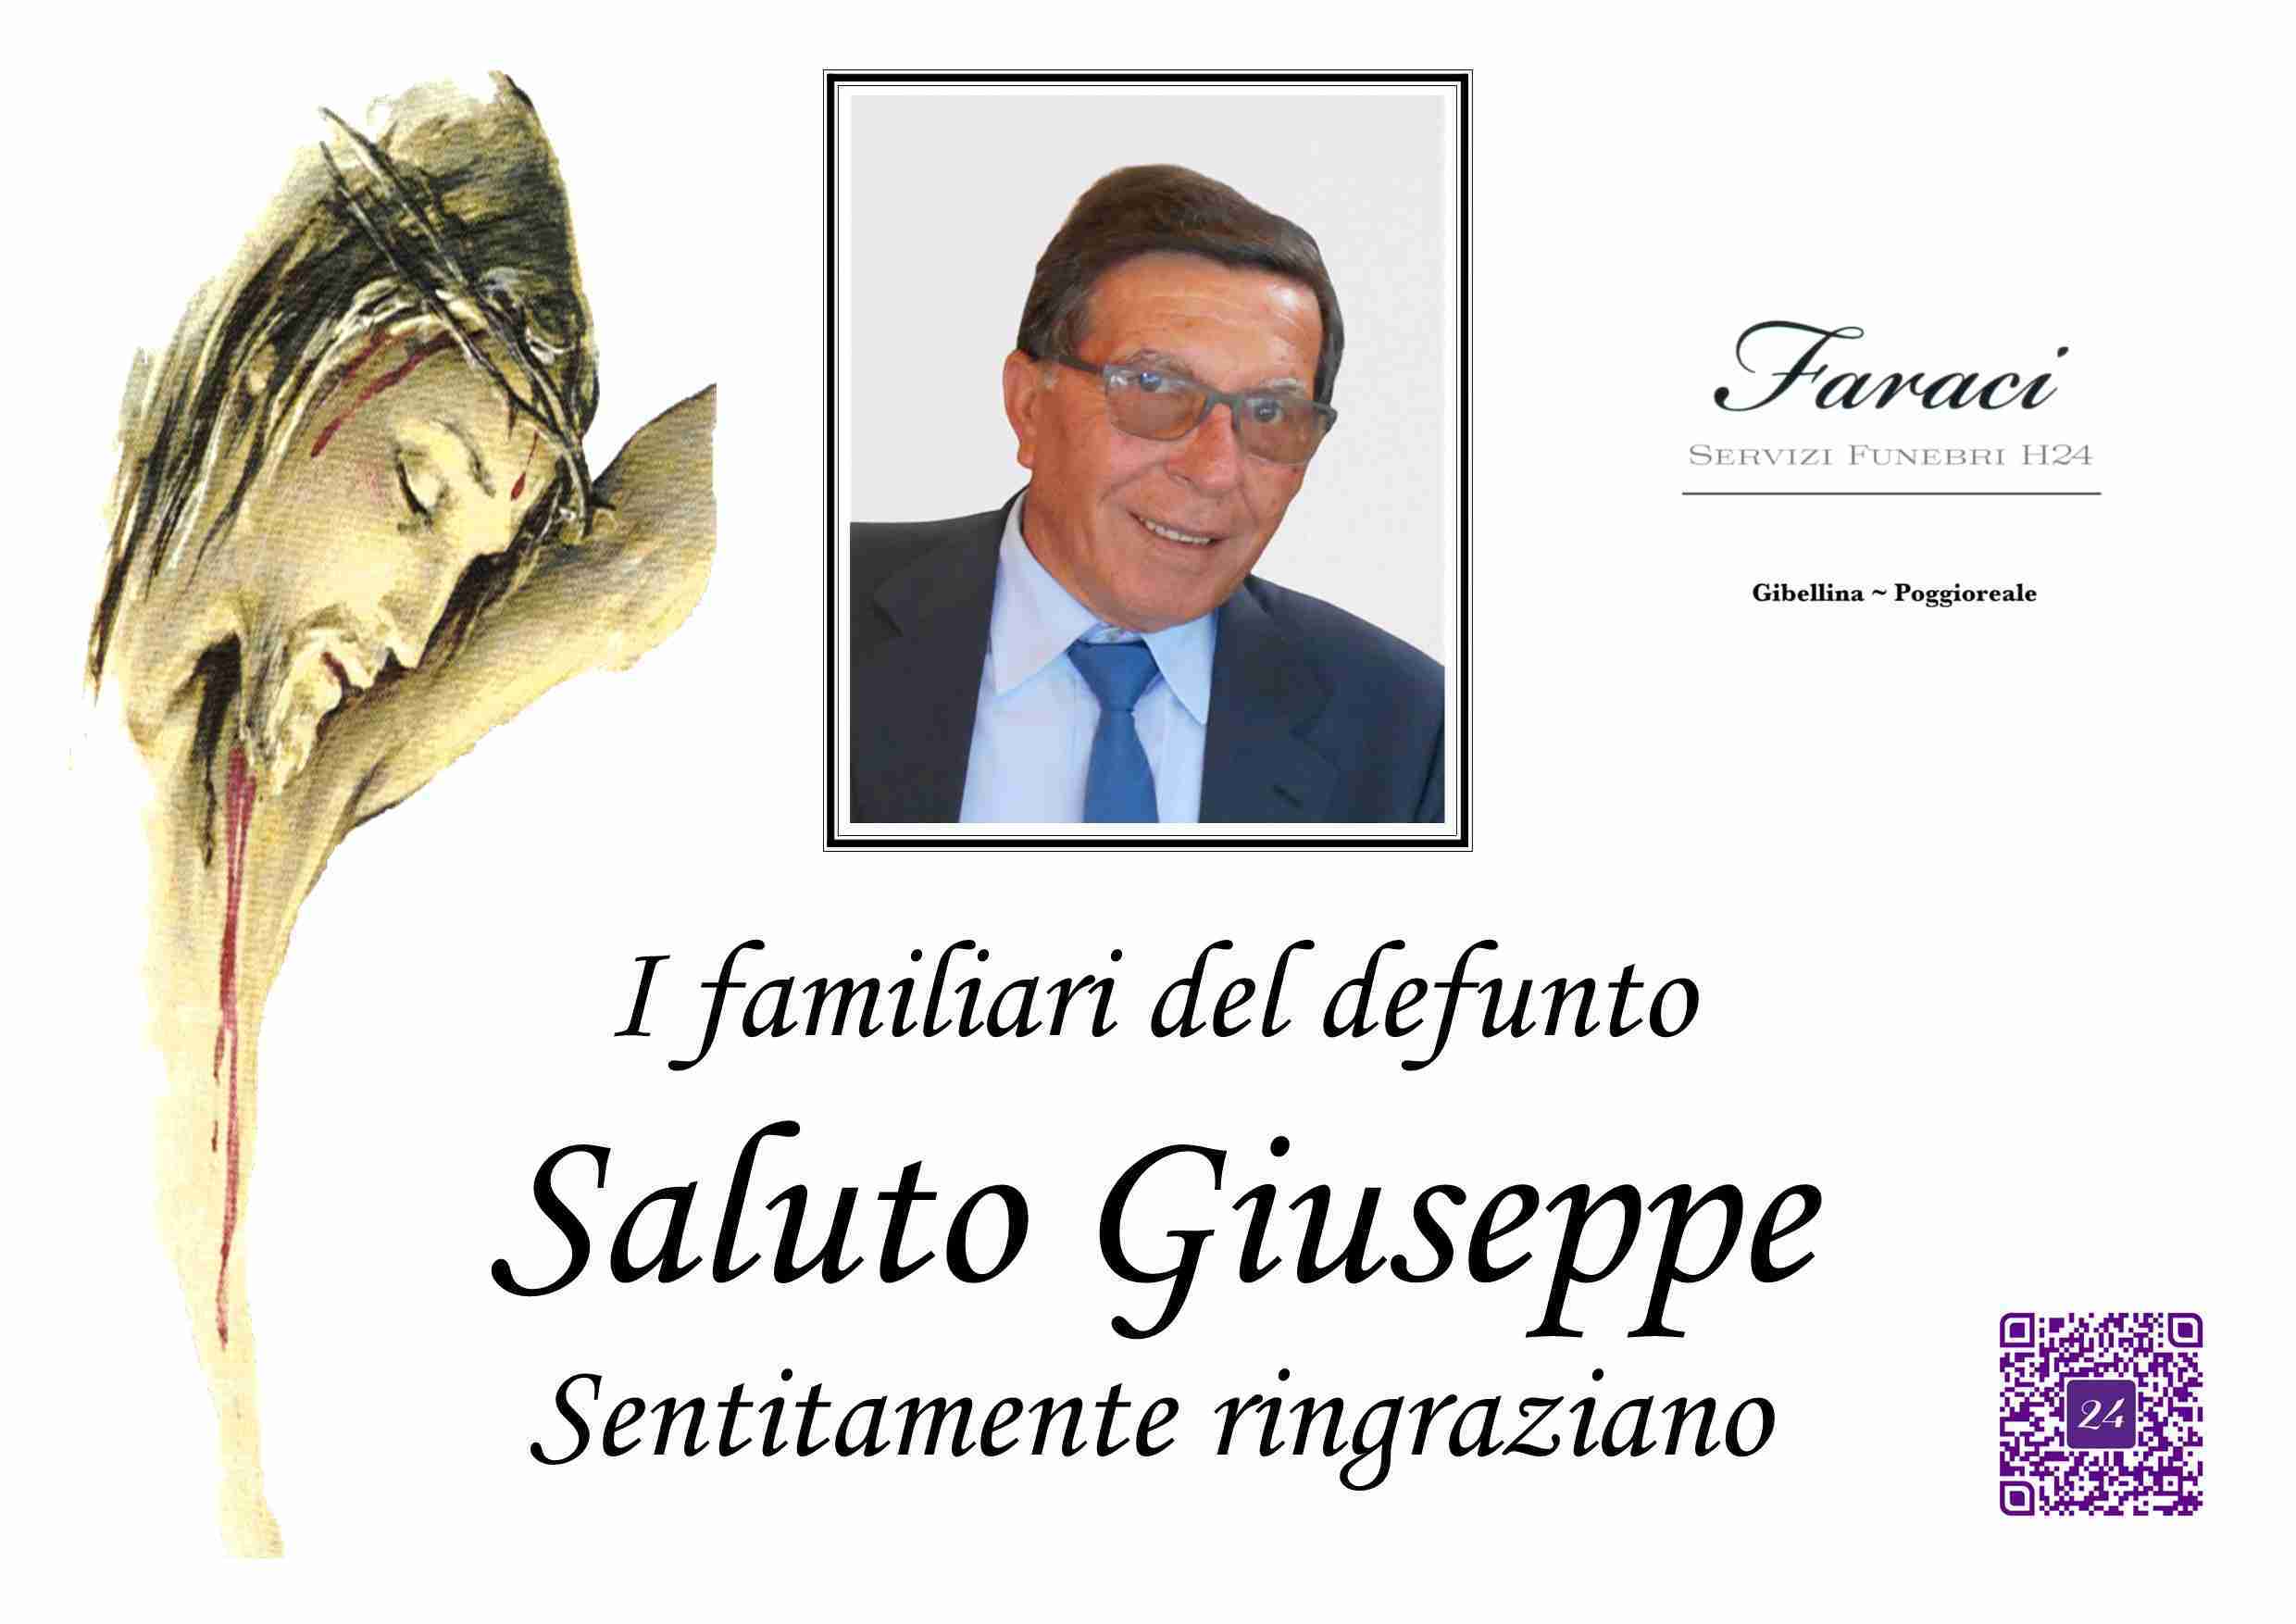 Giuseppe Saluto